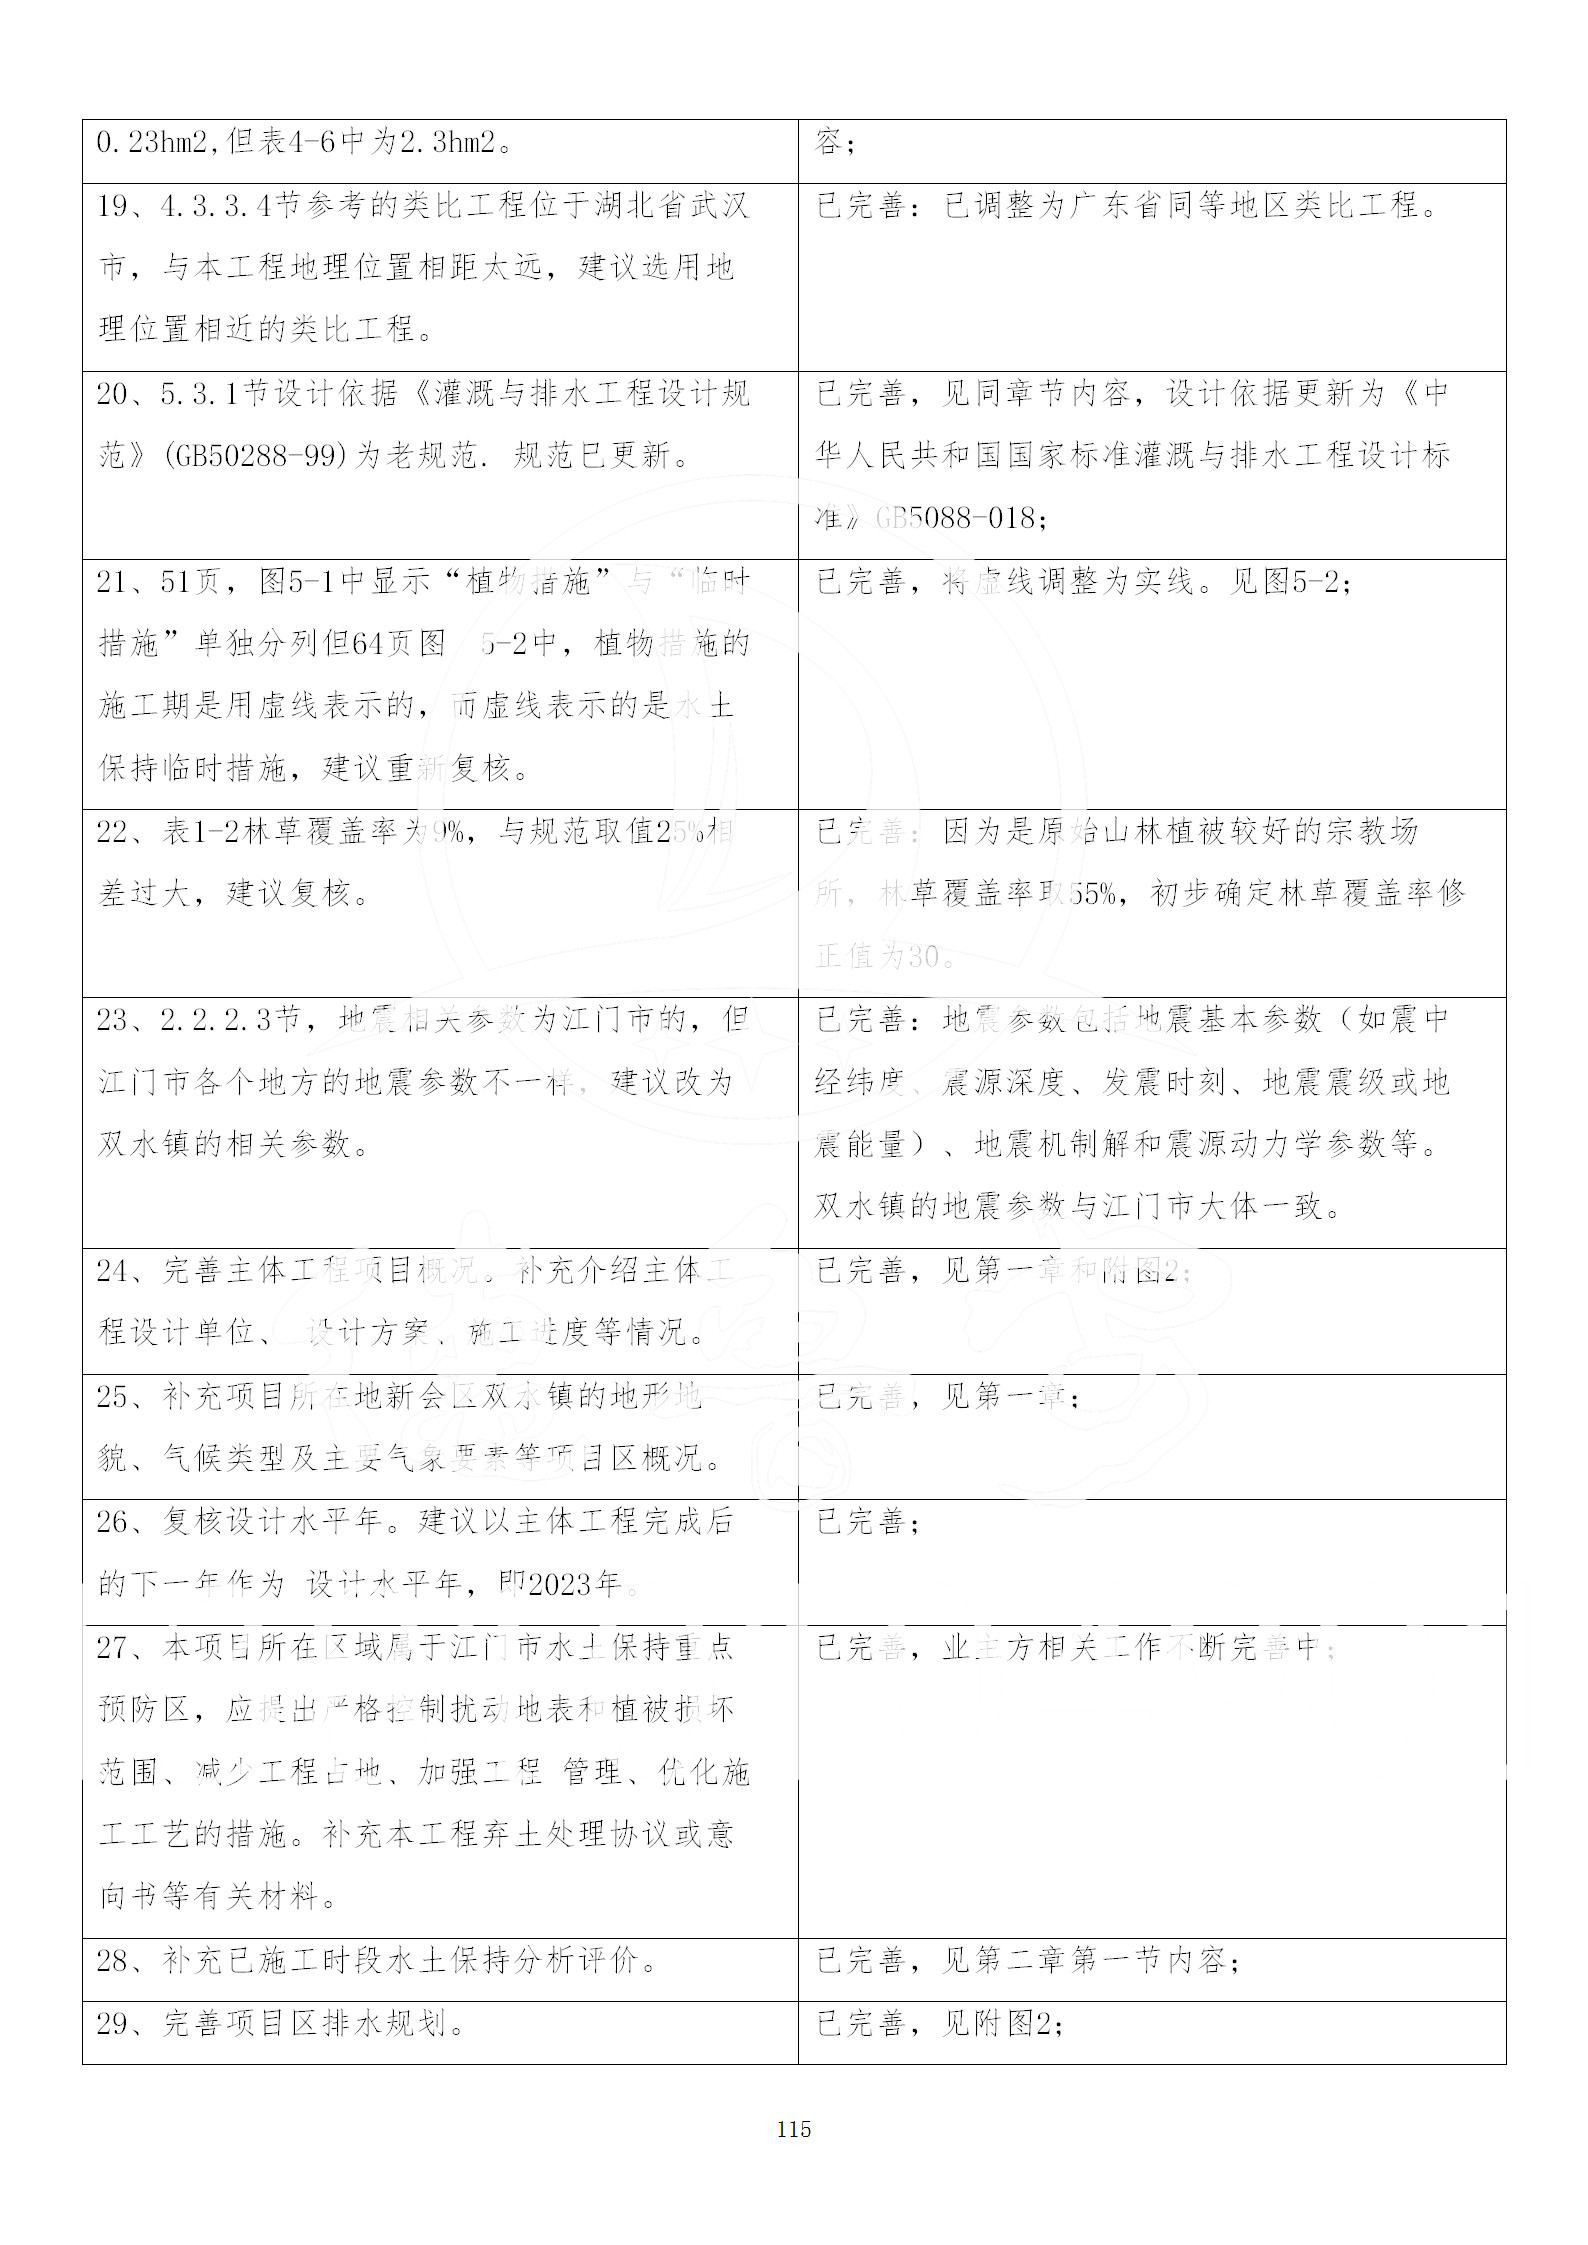 广东省大圣寺水土保持报告  修改稿5_115.jpg